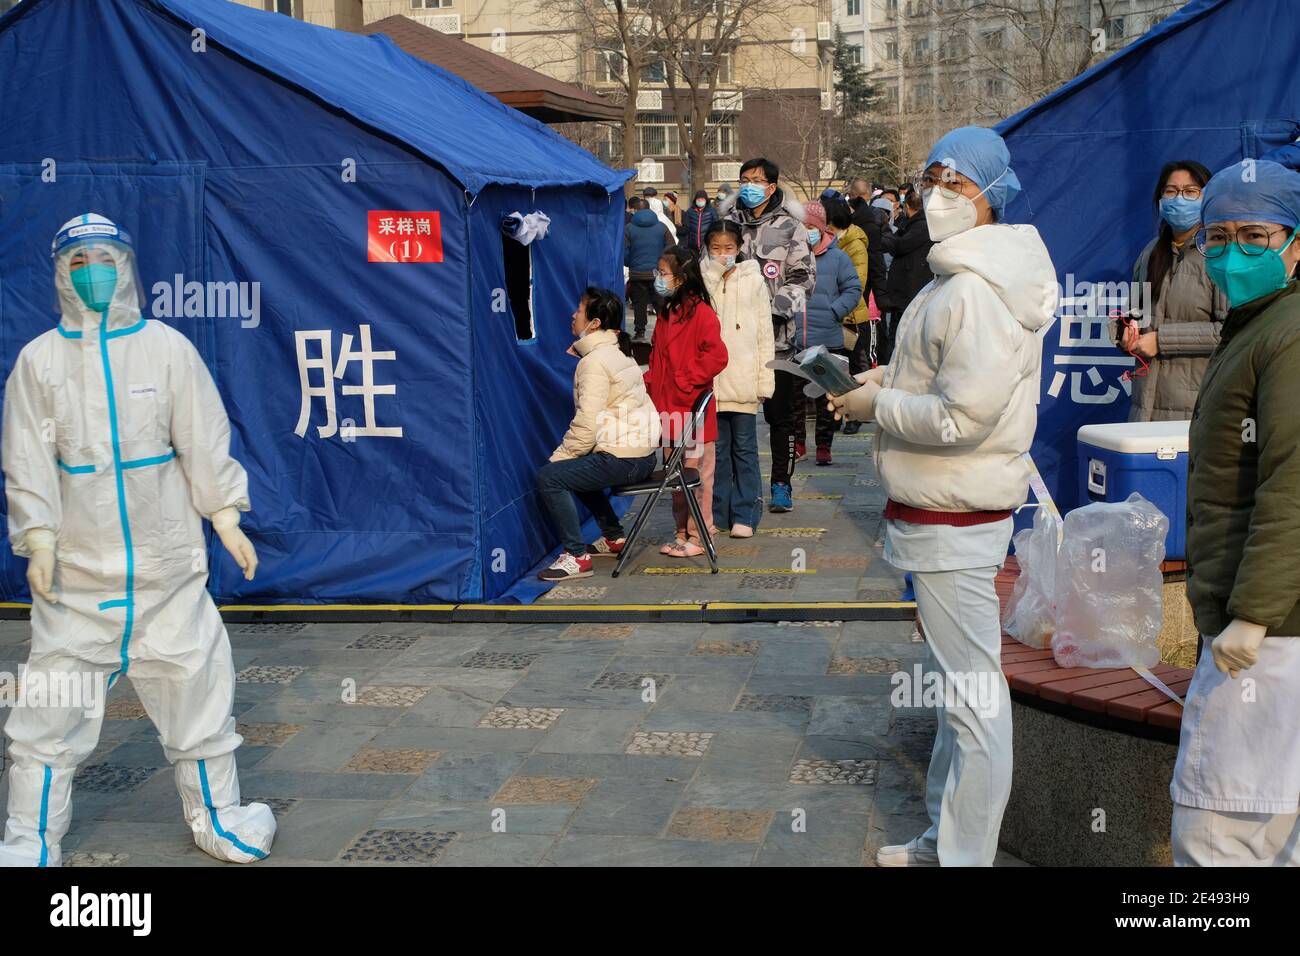 Le persone si allineano per ottenere il loro test di acido nucleico dopo l'epidemia di coronavirus (COVID-19) a Pechino, Cina 22 gennaio 2021. Foto Stock